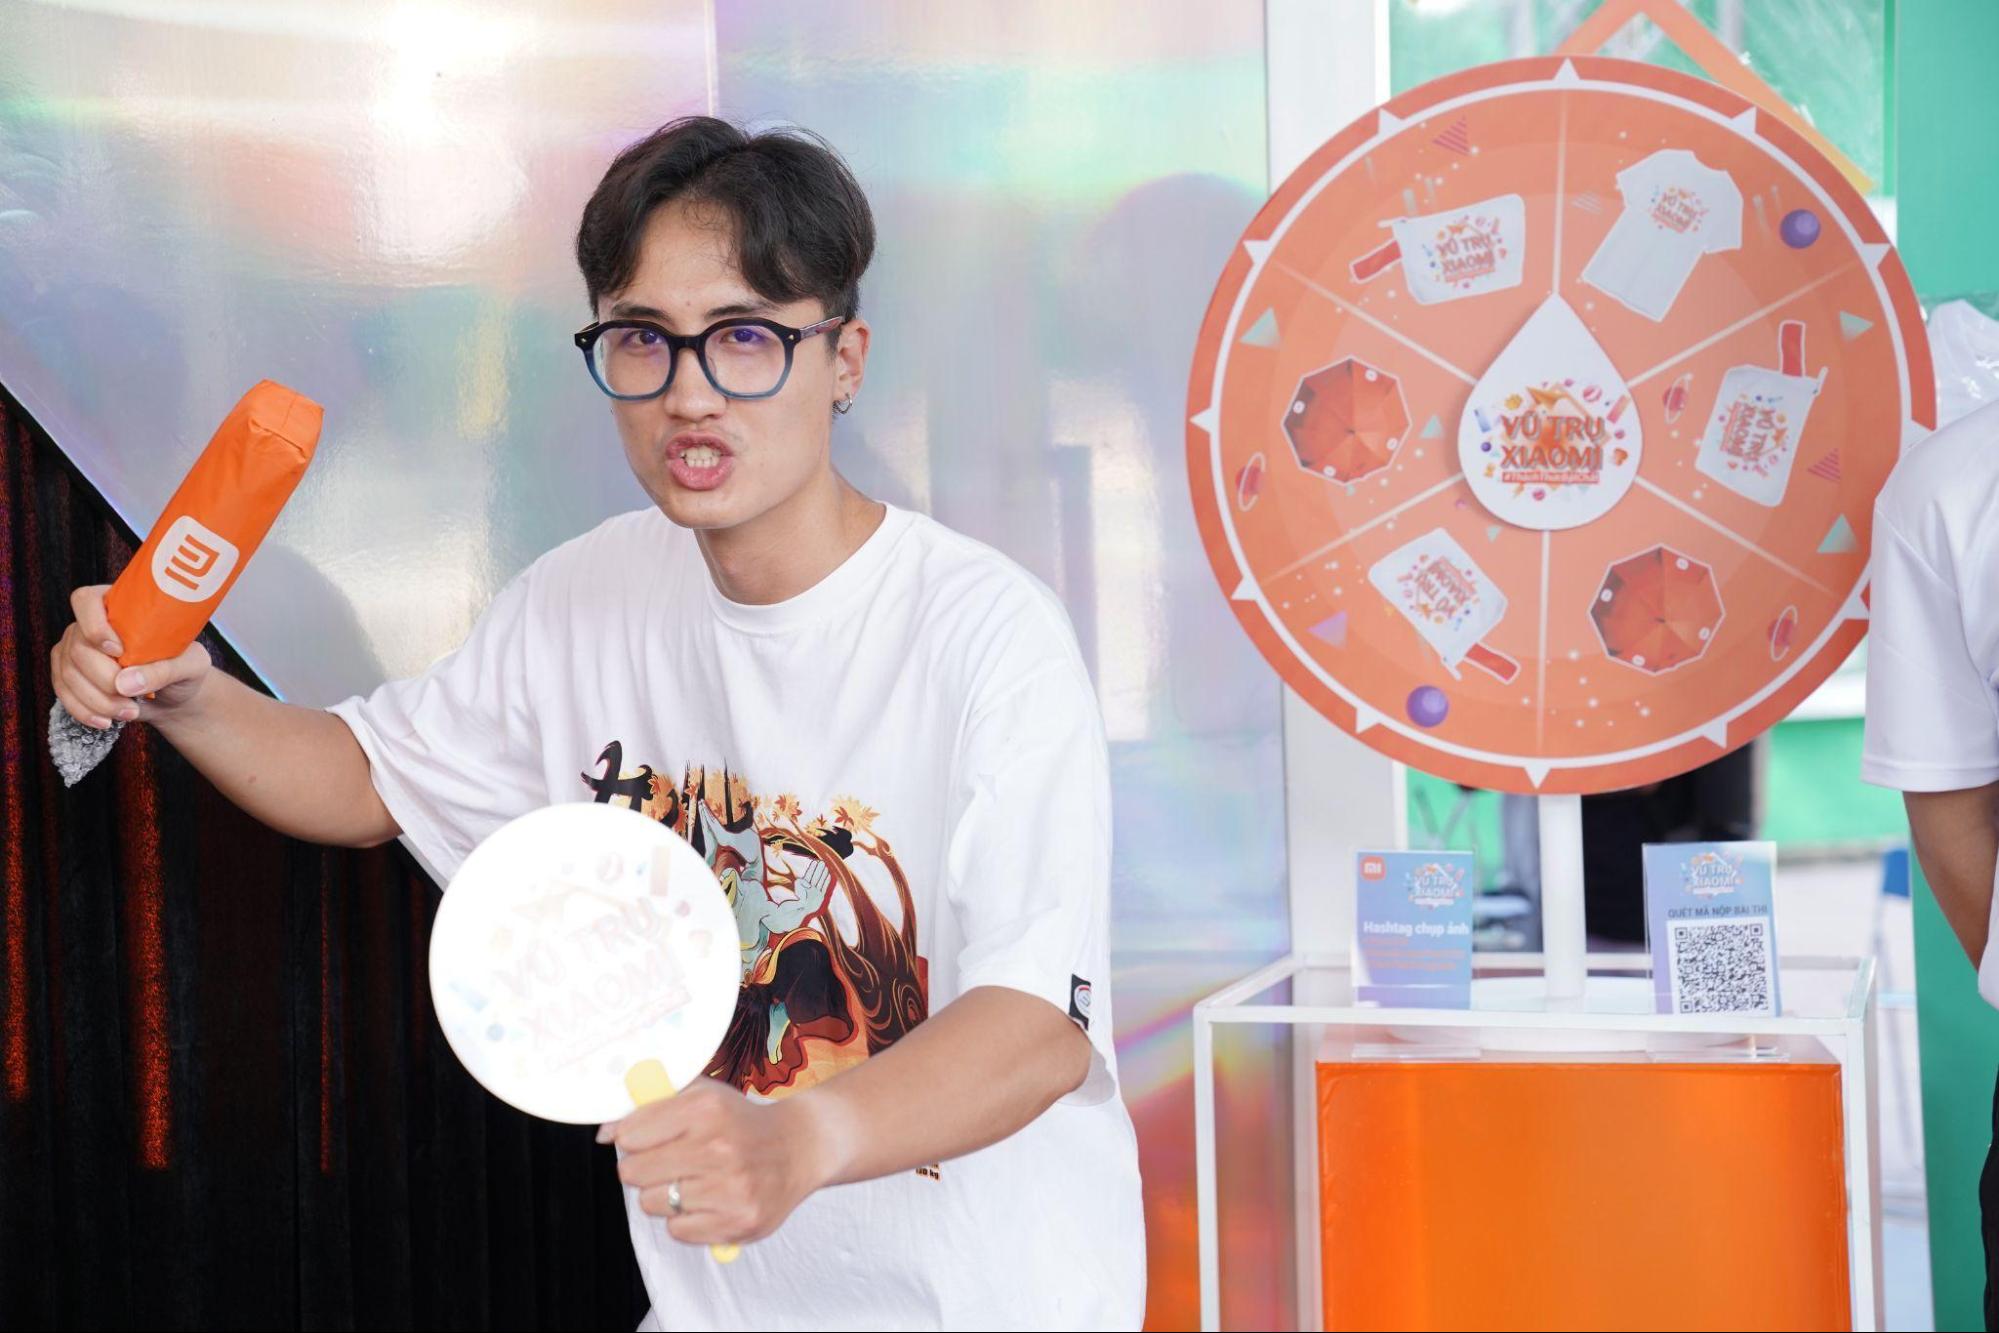 Xiaomi Campus Tour tổ chức cuộc thi online dành riêng cho sinh viên